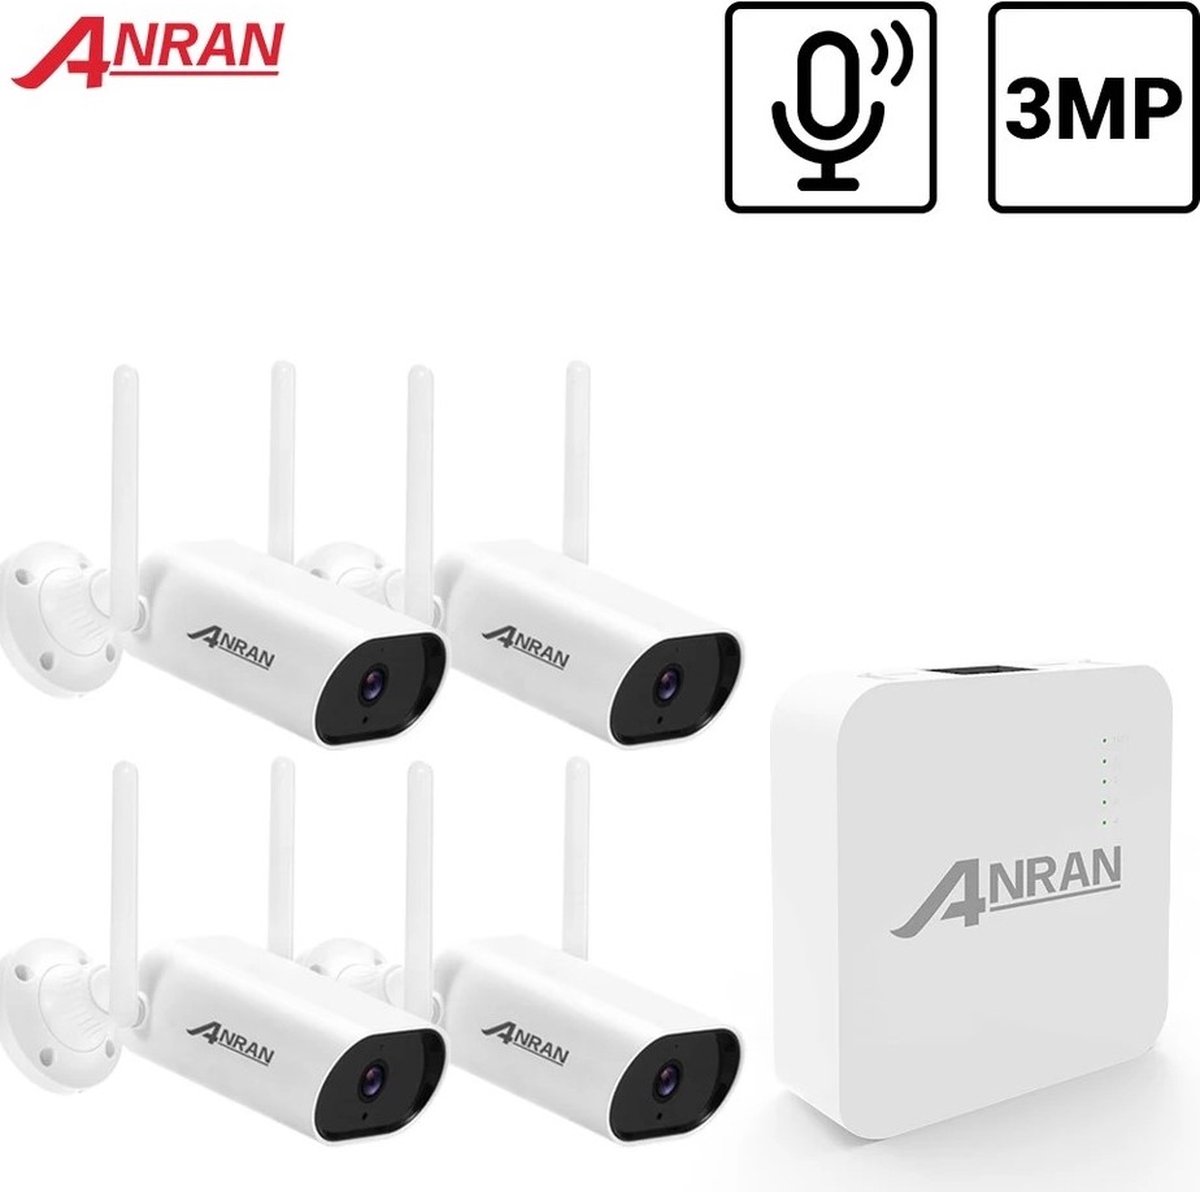 ANRAN 3MP Beveiligingscamera's voor Buiten - Full HD - IP camera - met 128GB SD-kaart - Wit - Plug & Play